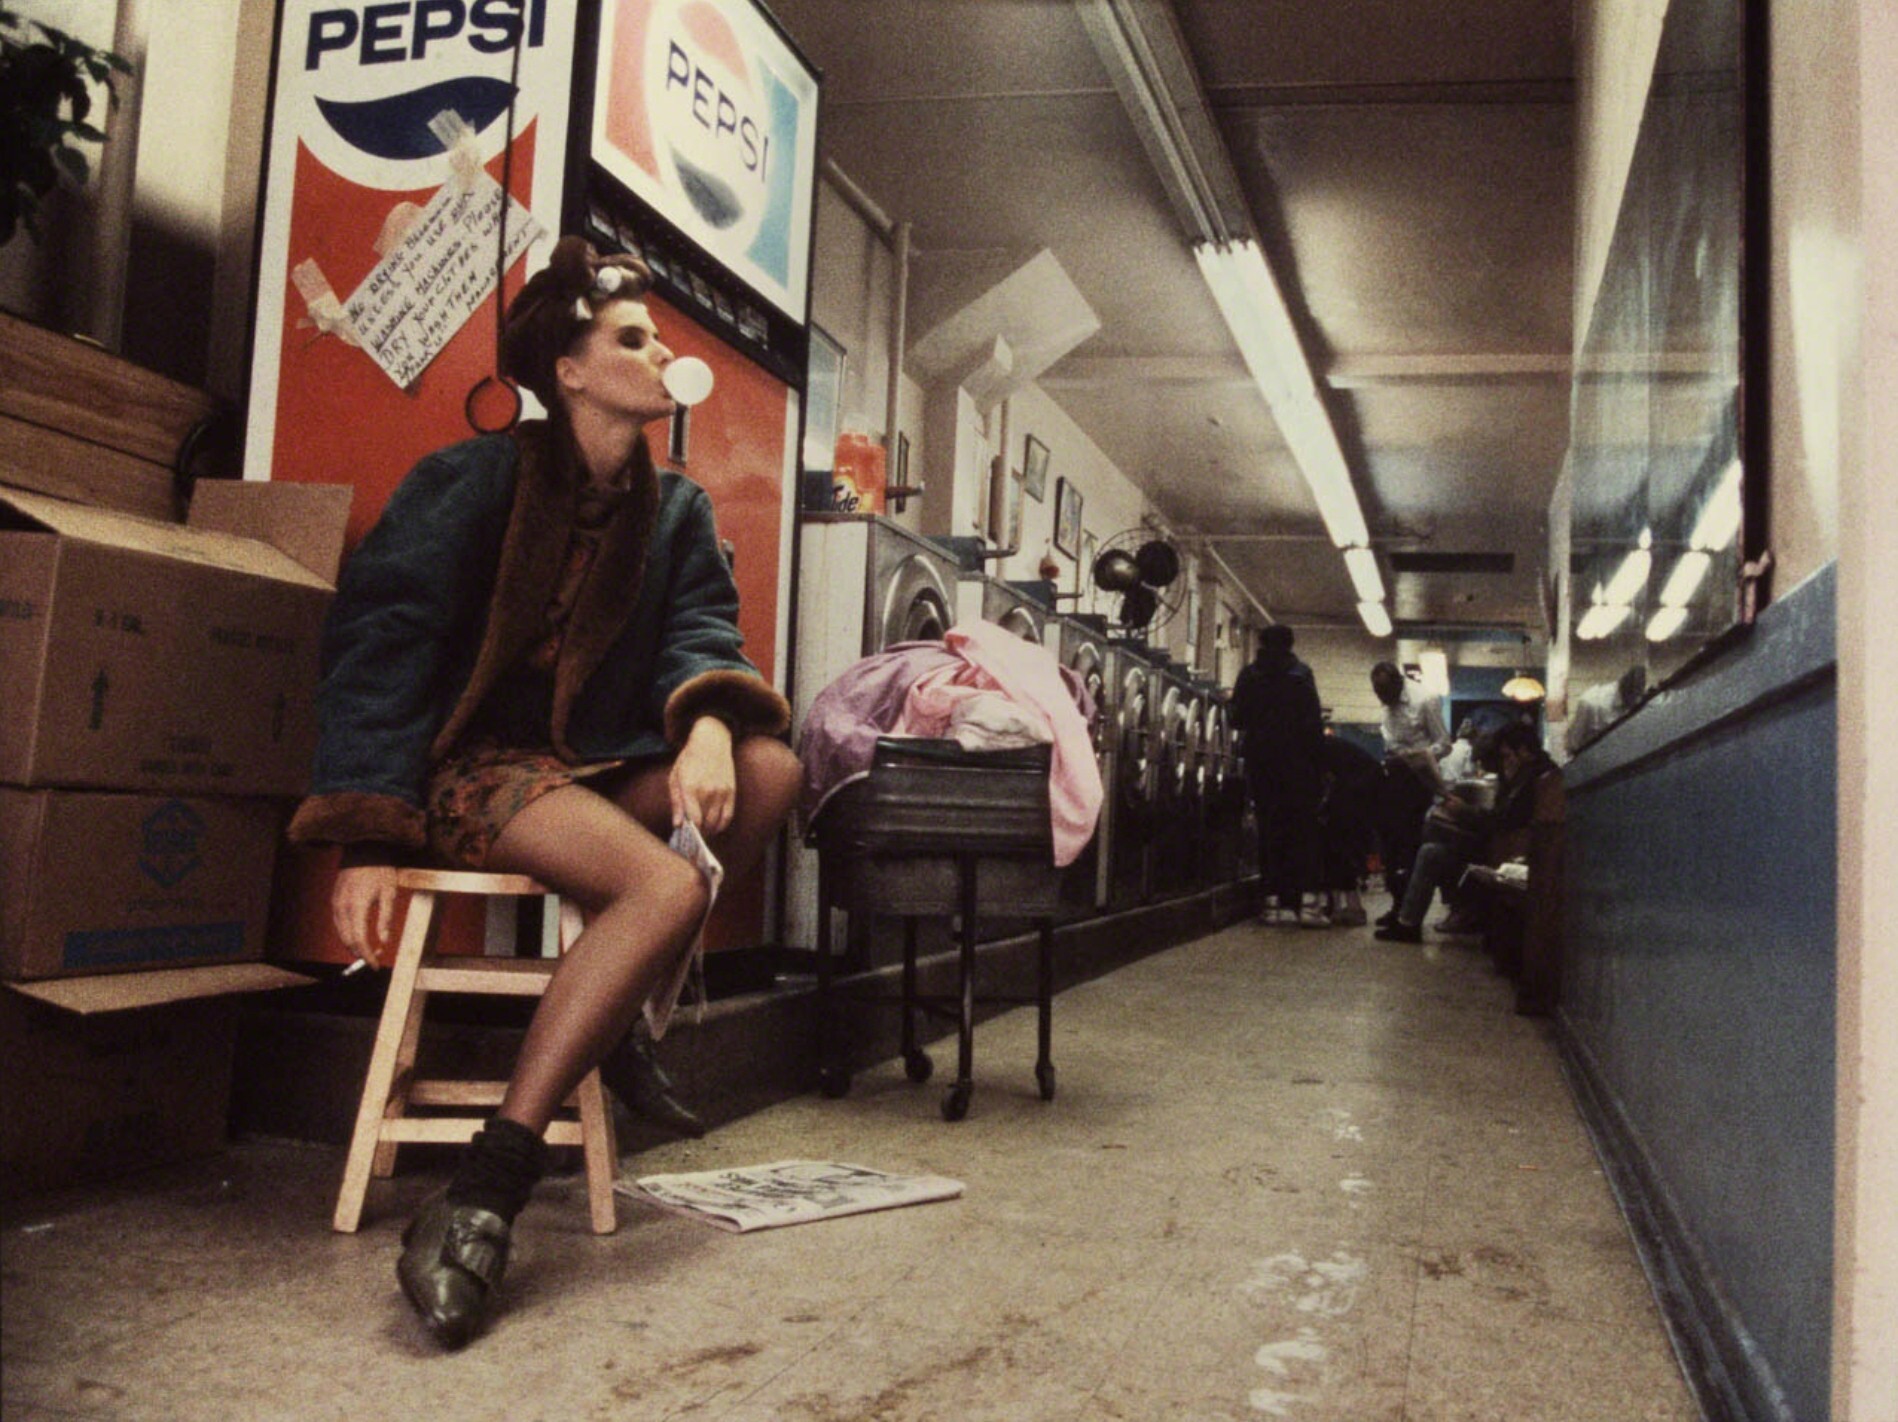 Прачечная, ок. 1980. Фотограф Роберт Фарбер